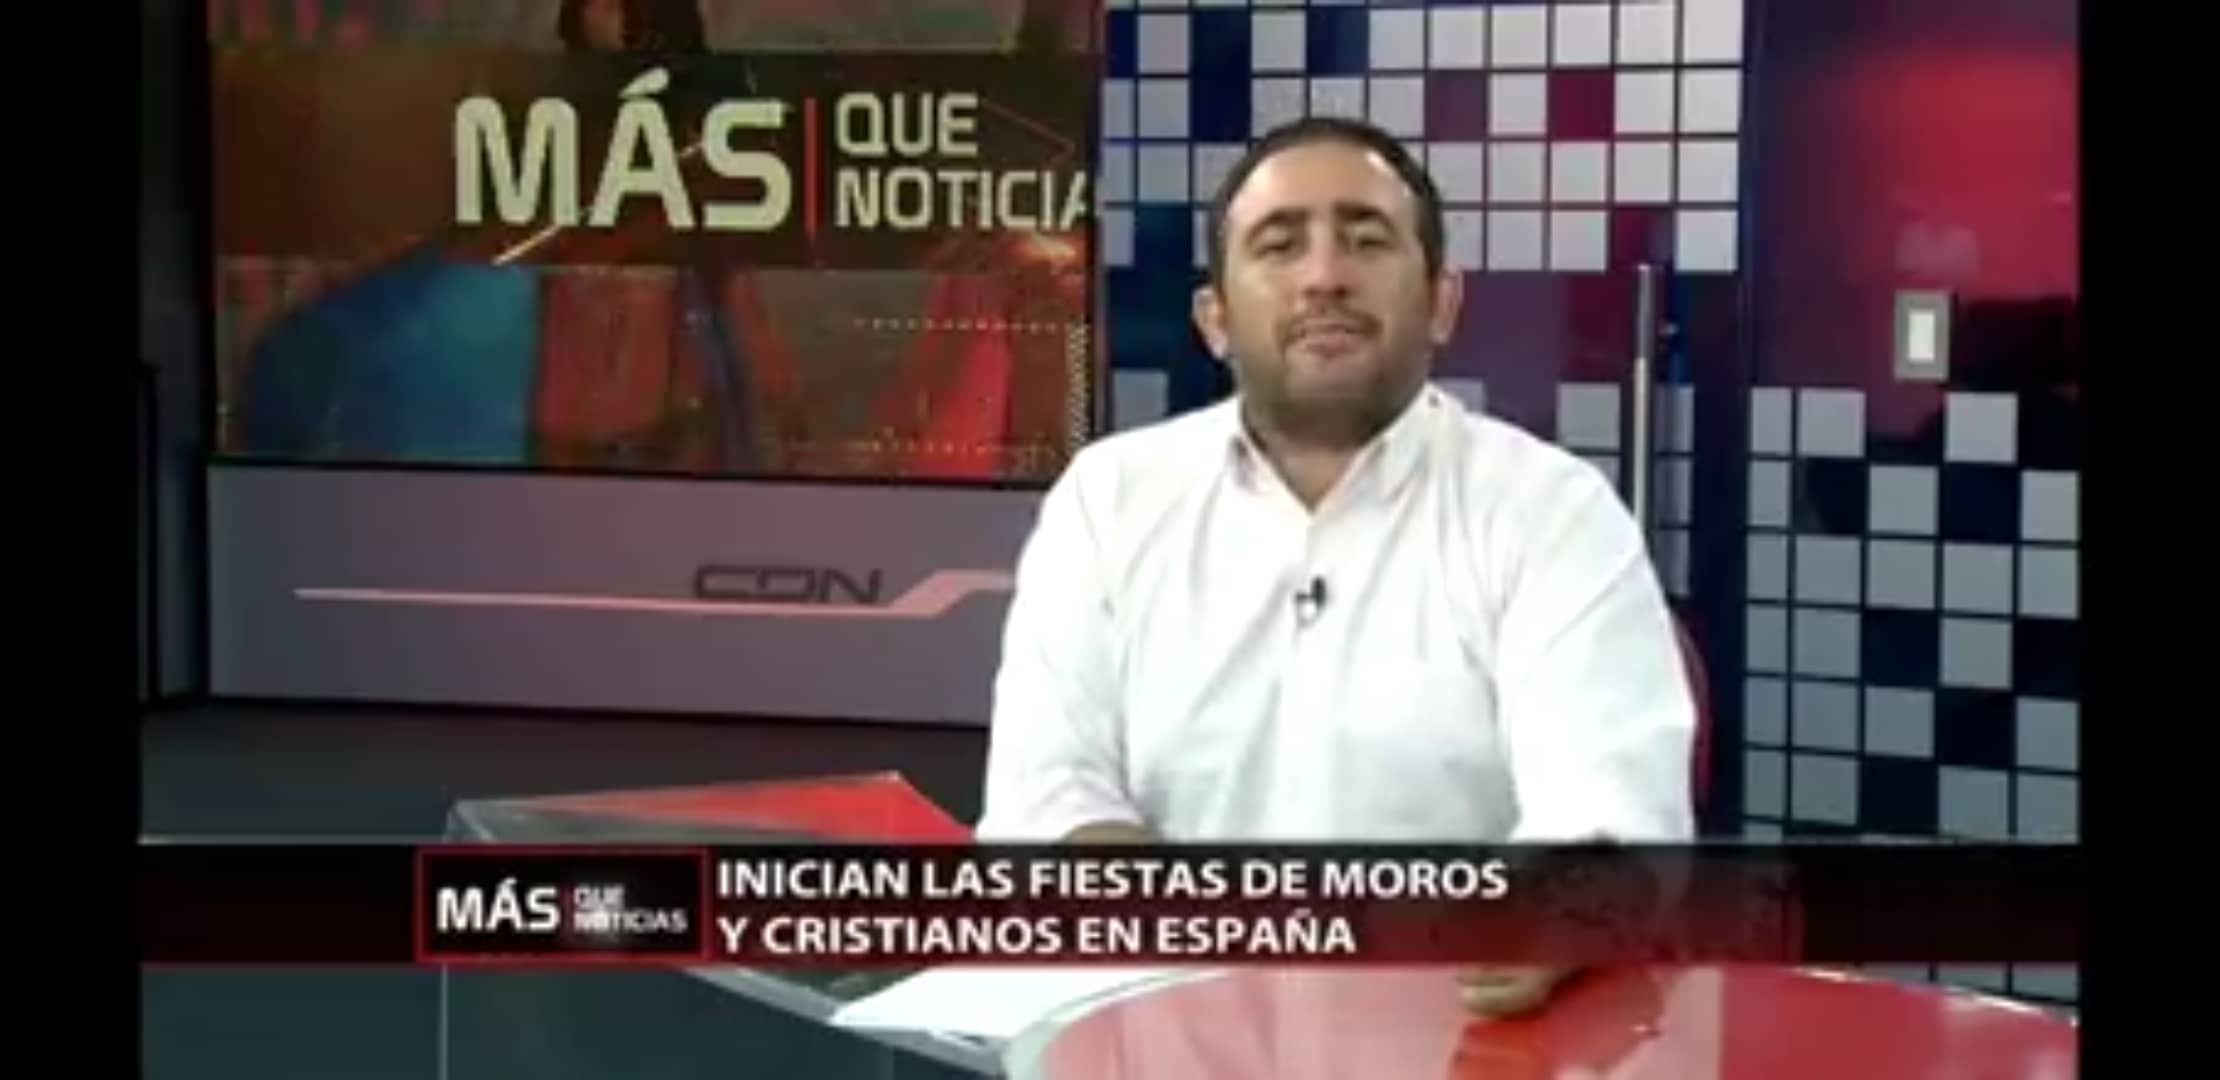 El PSOE lamenta el menosprecio de Los Verdes a la Junta Central en el video promocional de República Dominicana